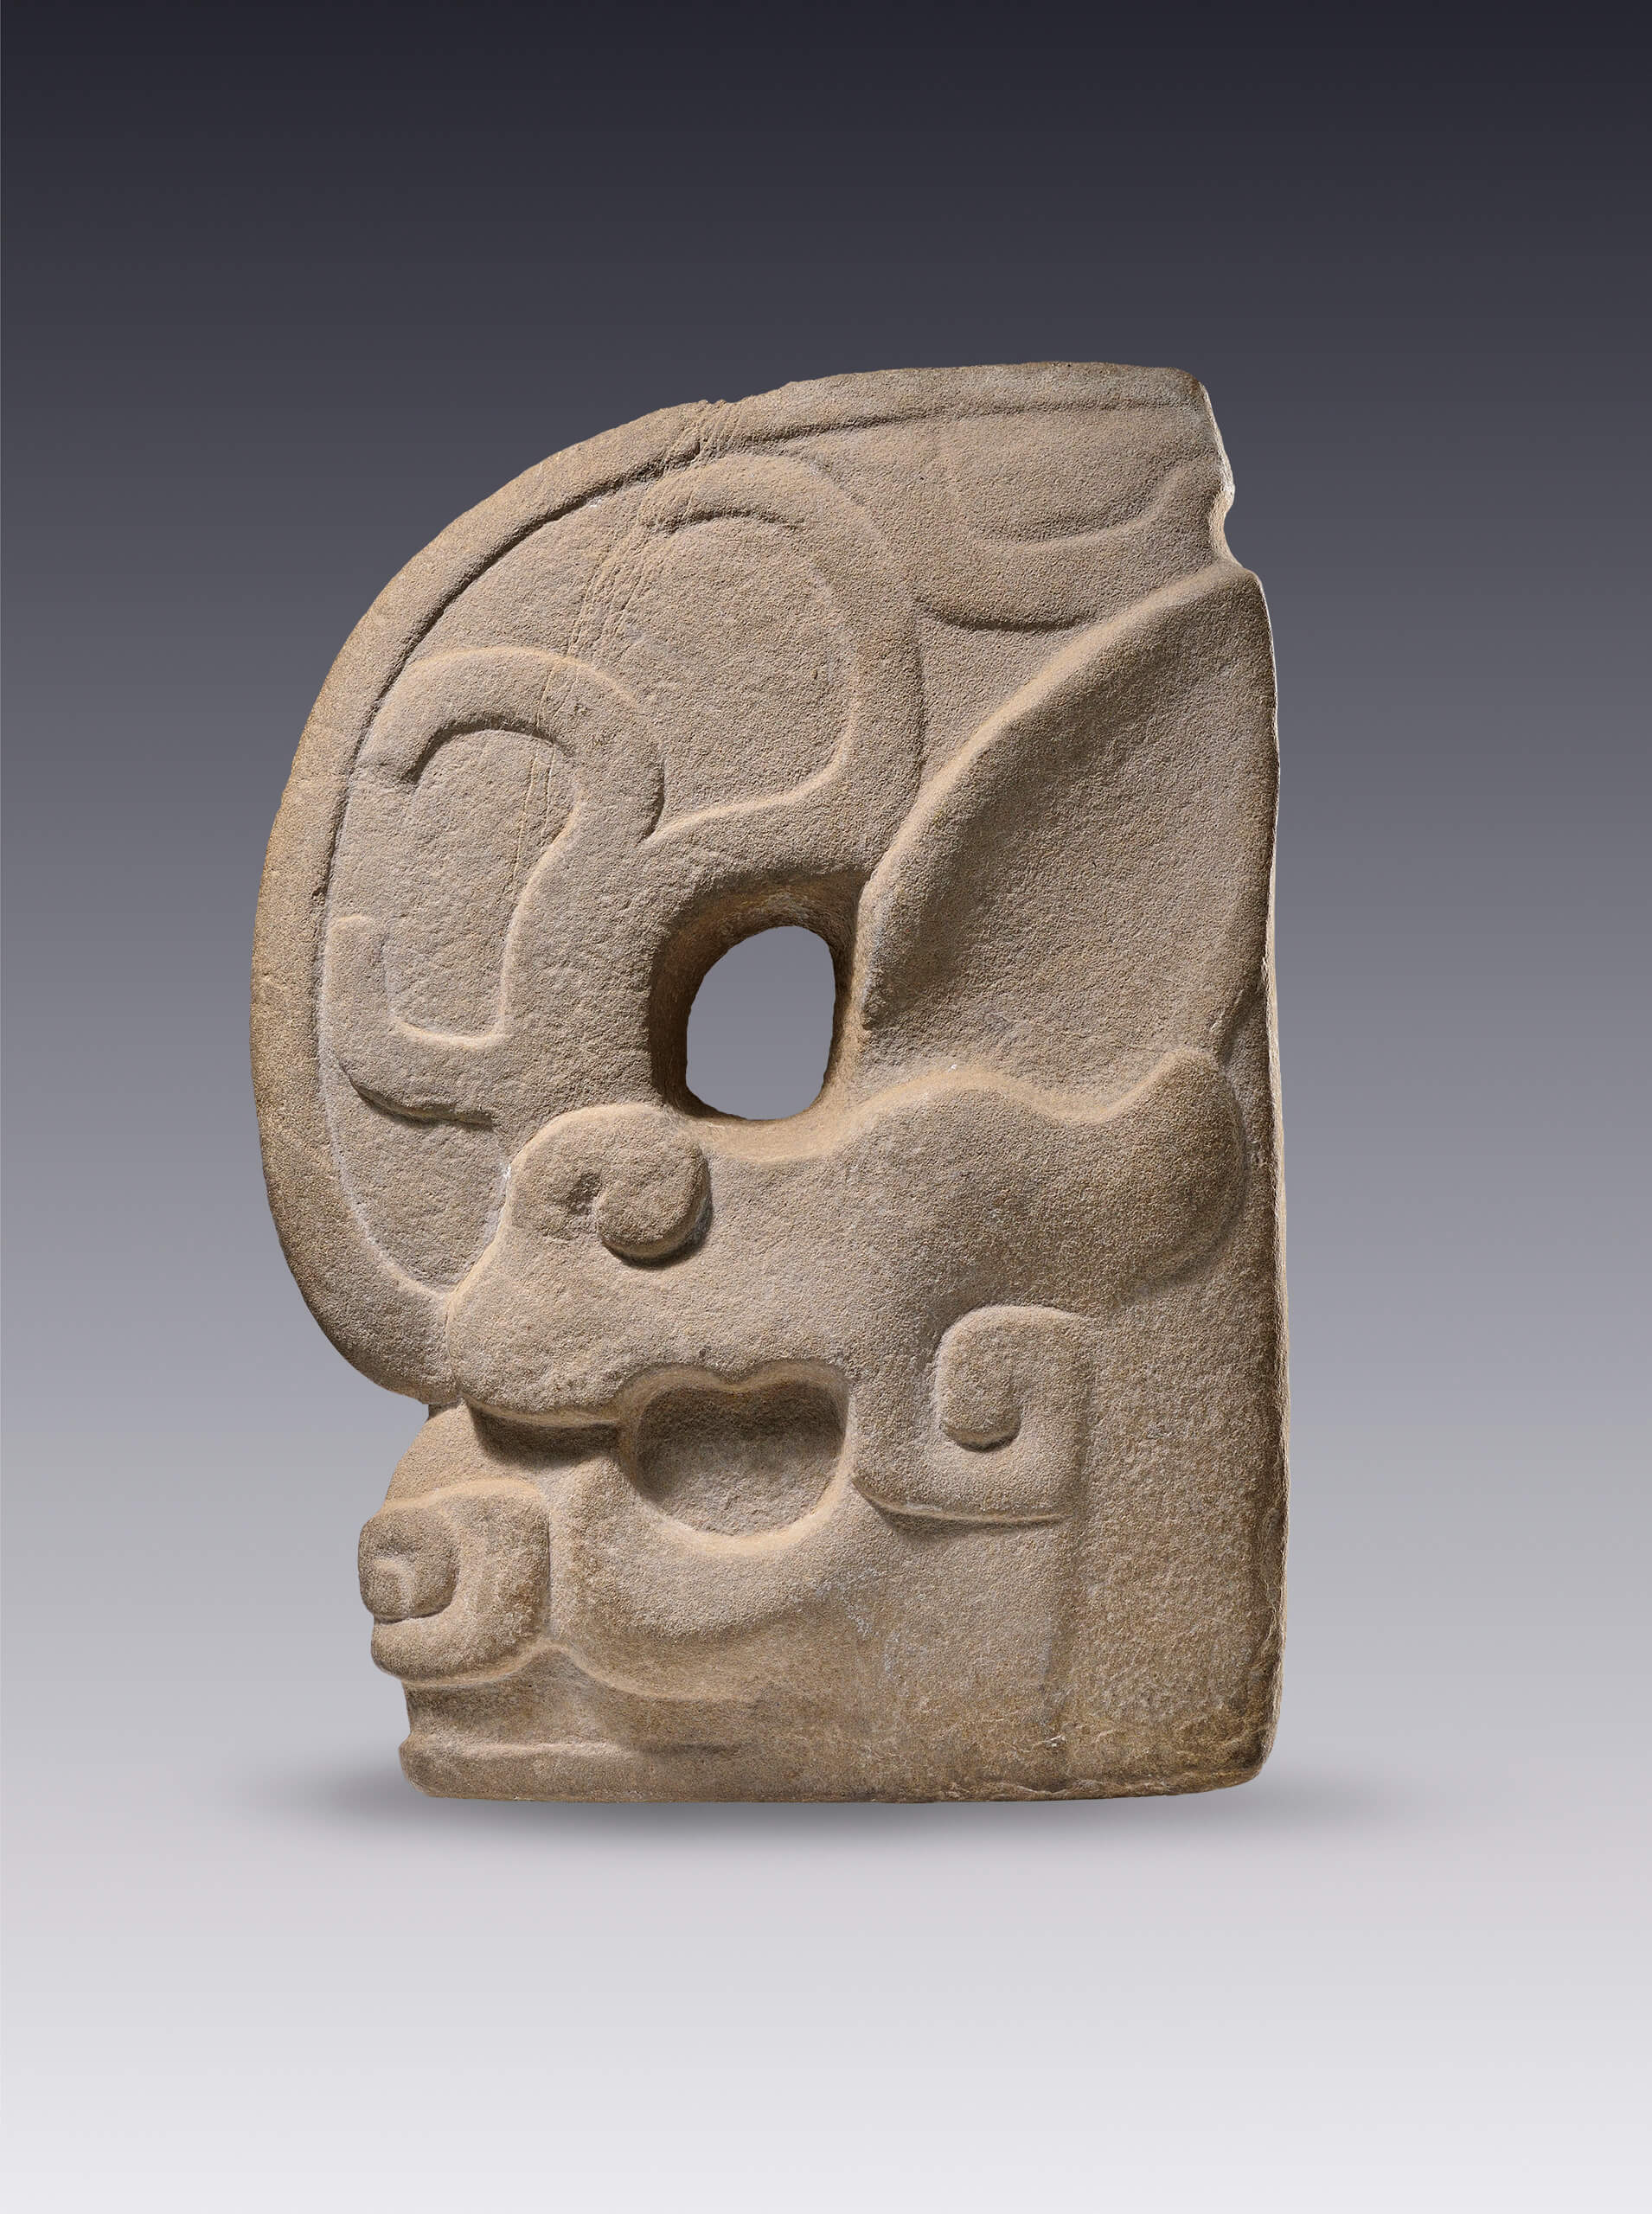  "Hacha ". Escultura votiva de un animal fantástico | El tiempo en las cosas II. Salas de Arte Contemporáneo | Museo Amparo, Puebla